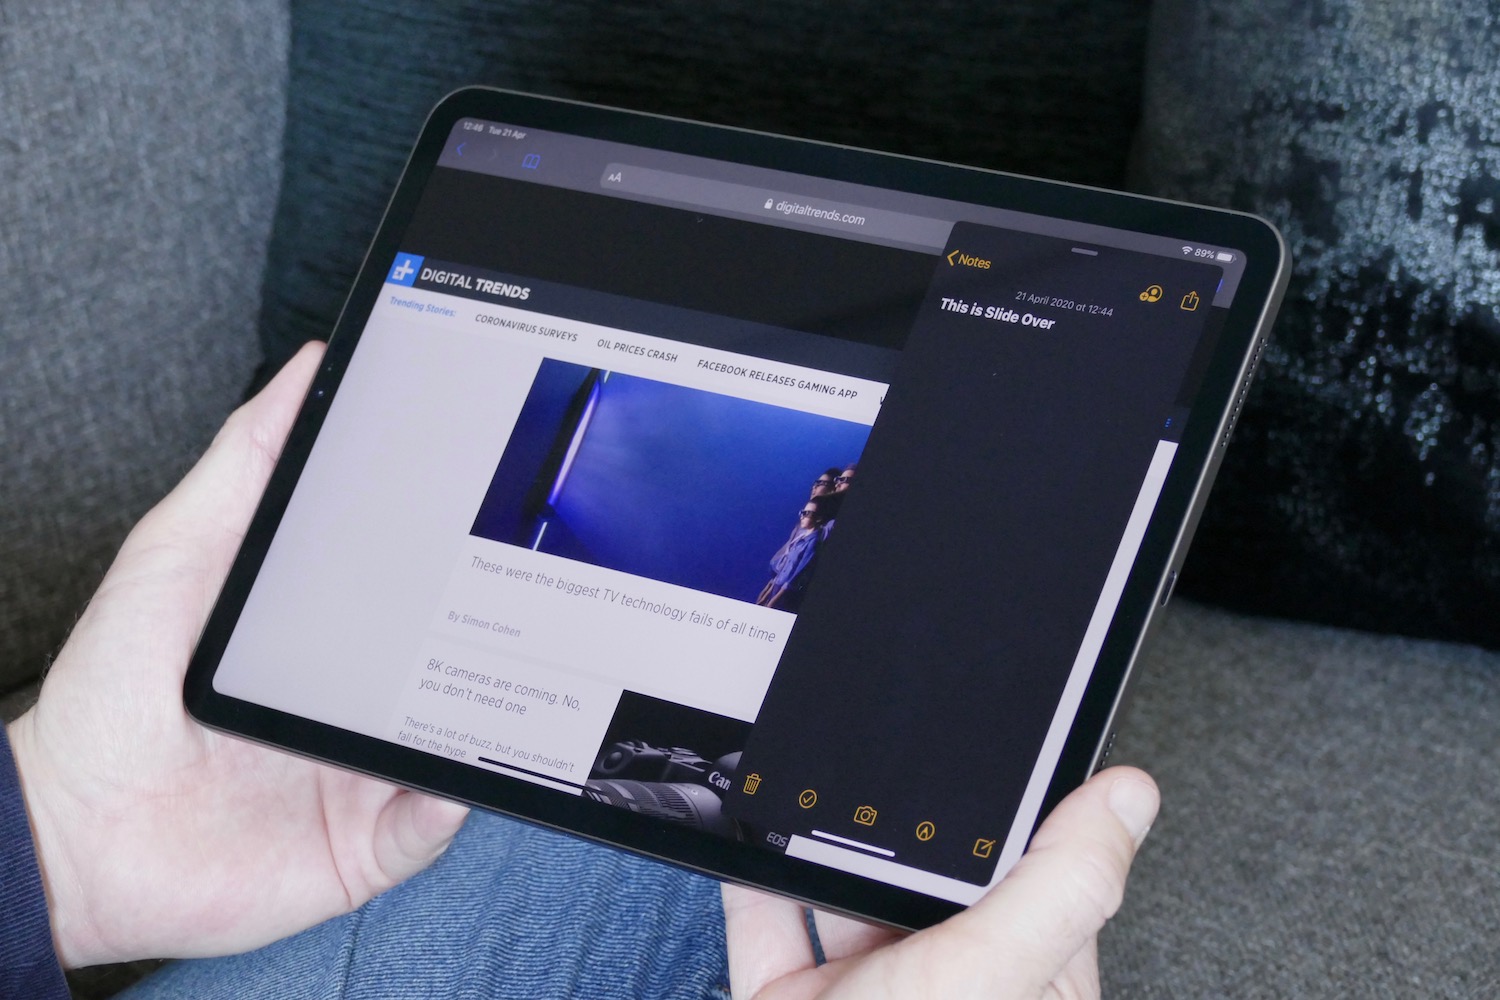 iPad Pro 2020 Slide Over